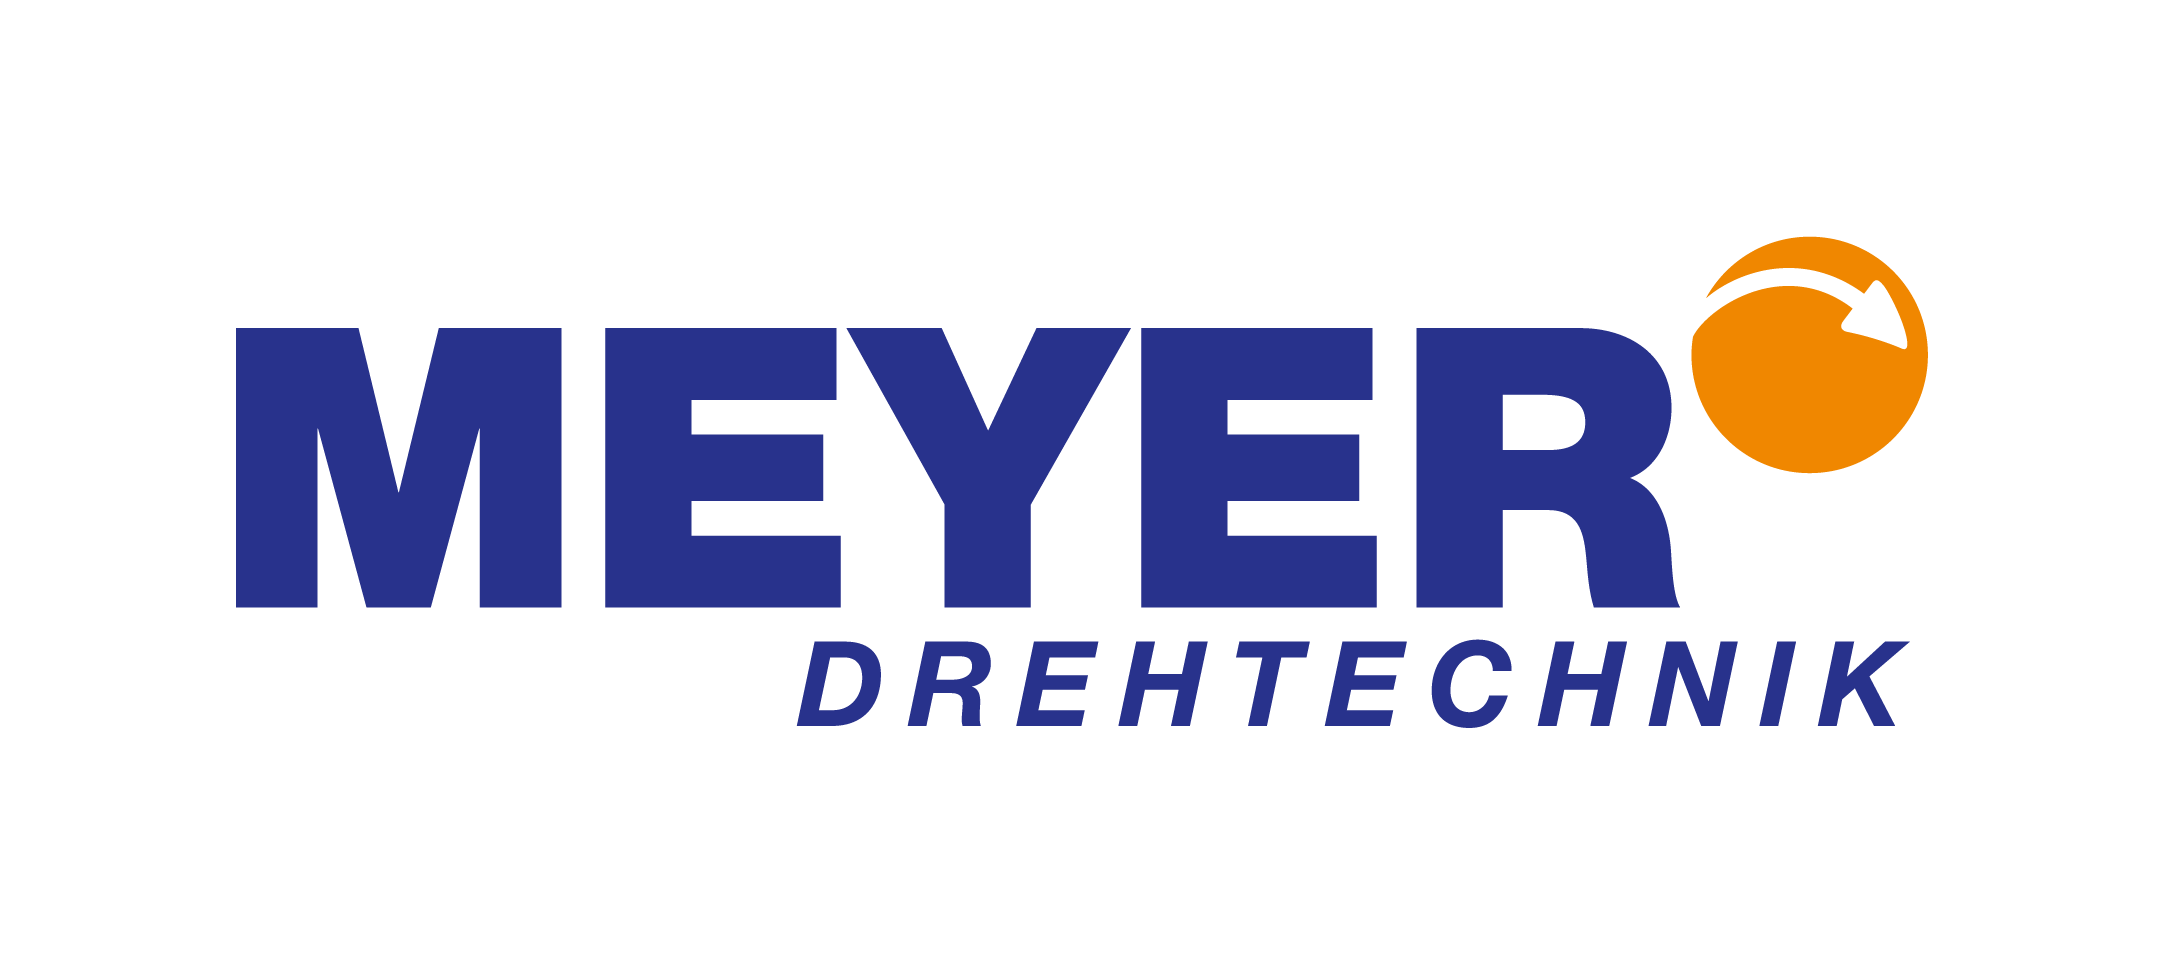 Meyer Drehtechnik